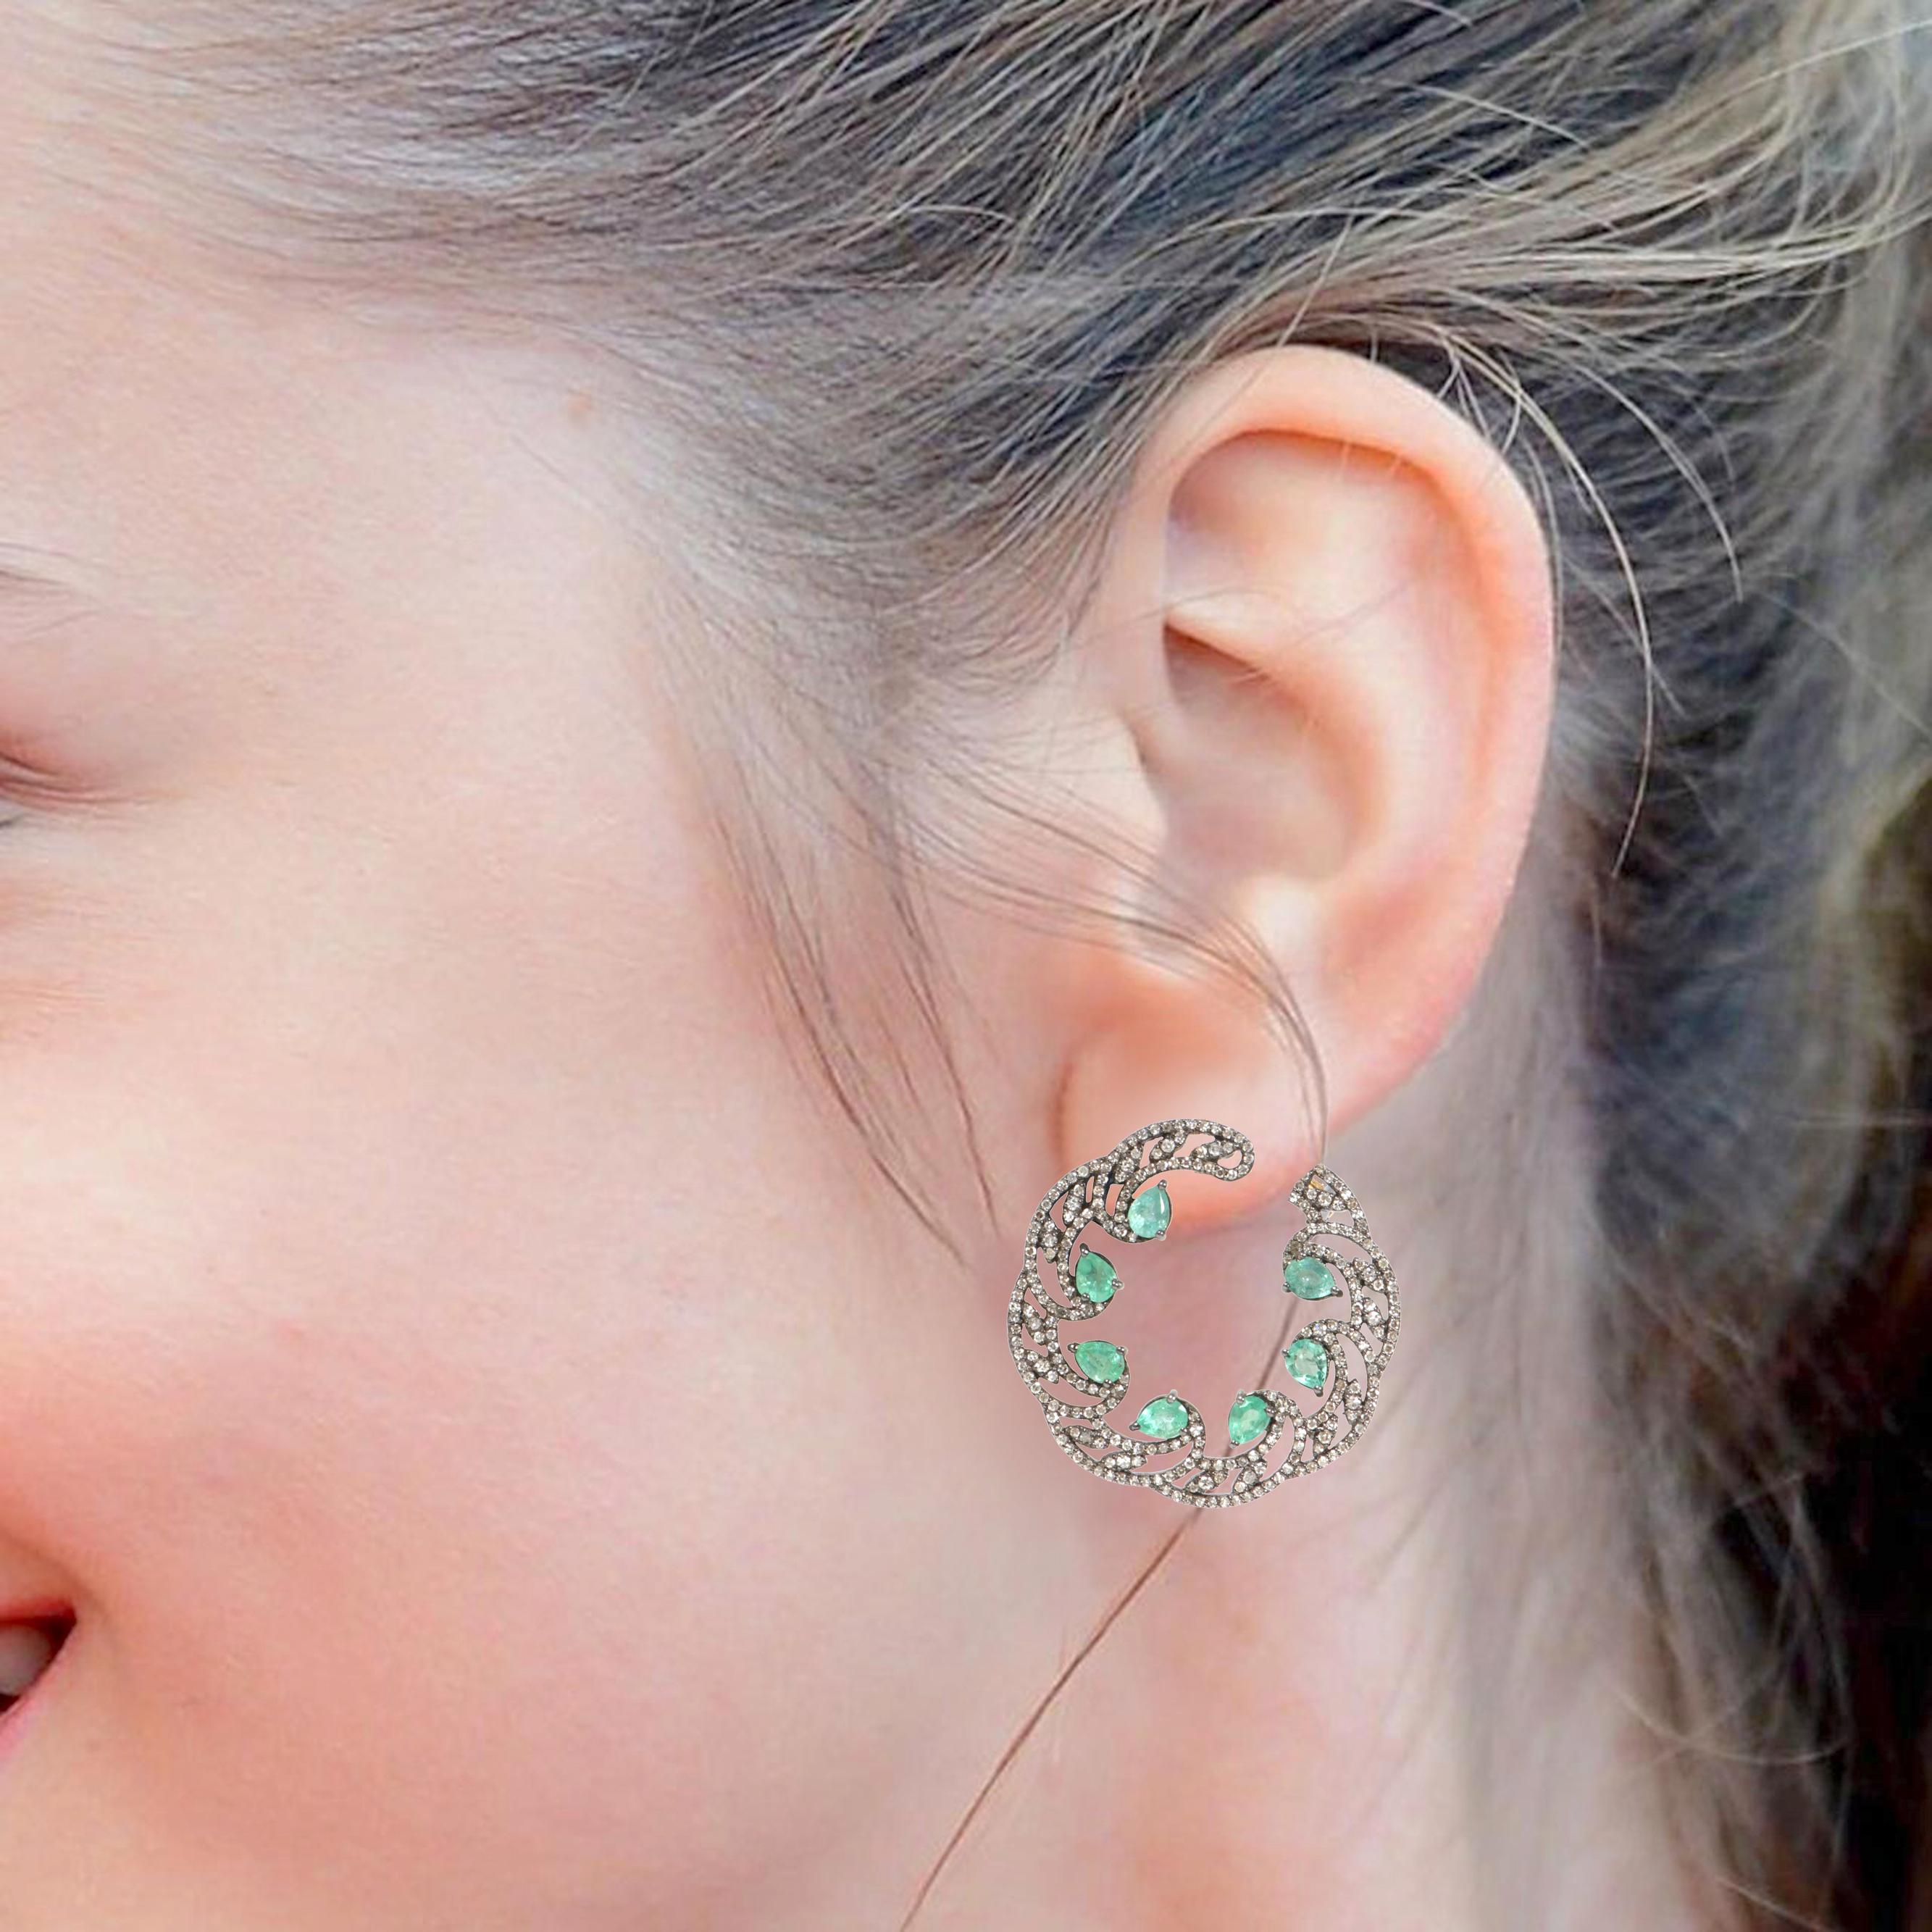 5.96 Karat Smaragd und Diamant Modulation Hoop Ohrringe im Art-Deco-Stil

Dieser glamouröse Kleeblatt-Ohrring im viktorianischen Stil mit grünem Smaragd und Diamanten ist wunderschön. Der einzigartige Reifenstil, der die Vorderseite bedeckt, weicht